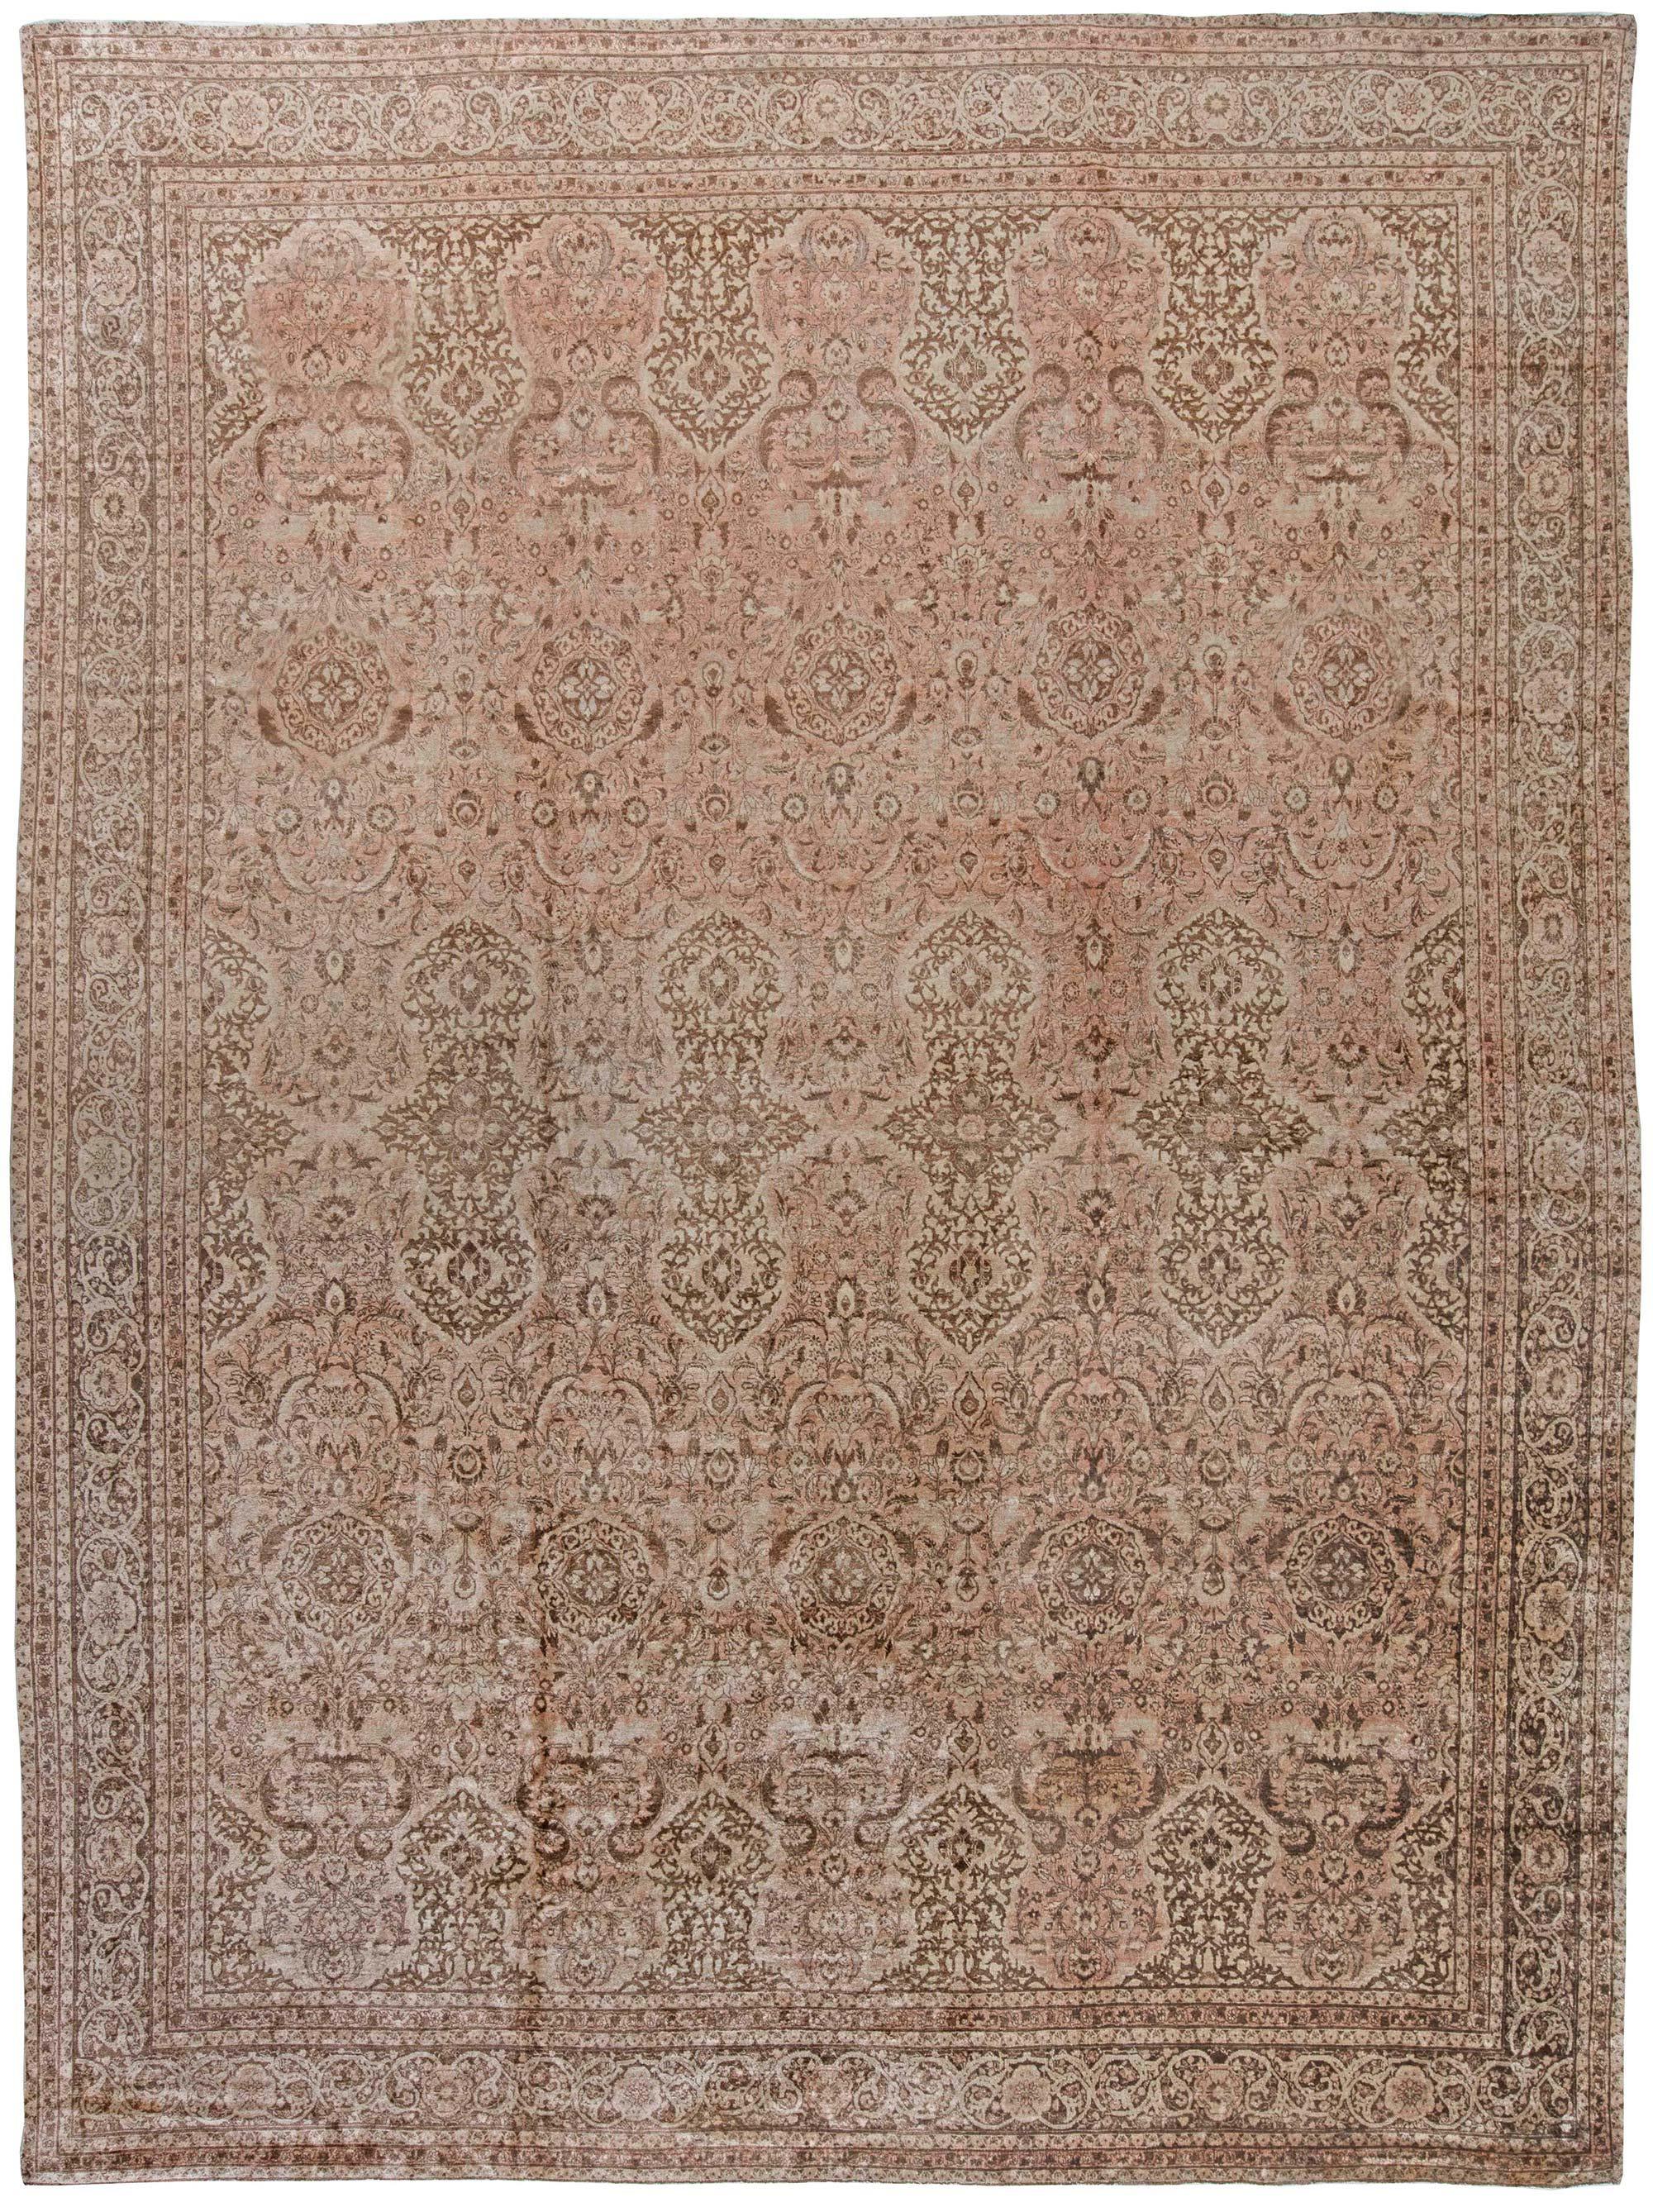 Vintage Persian Tabriz Brown Handmade Wool Rug